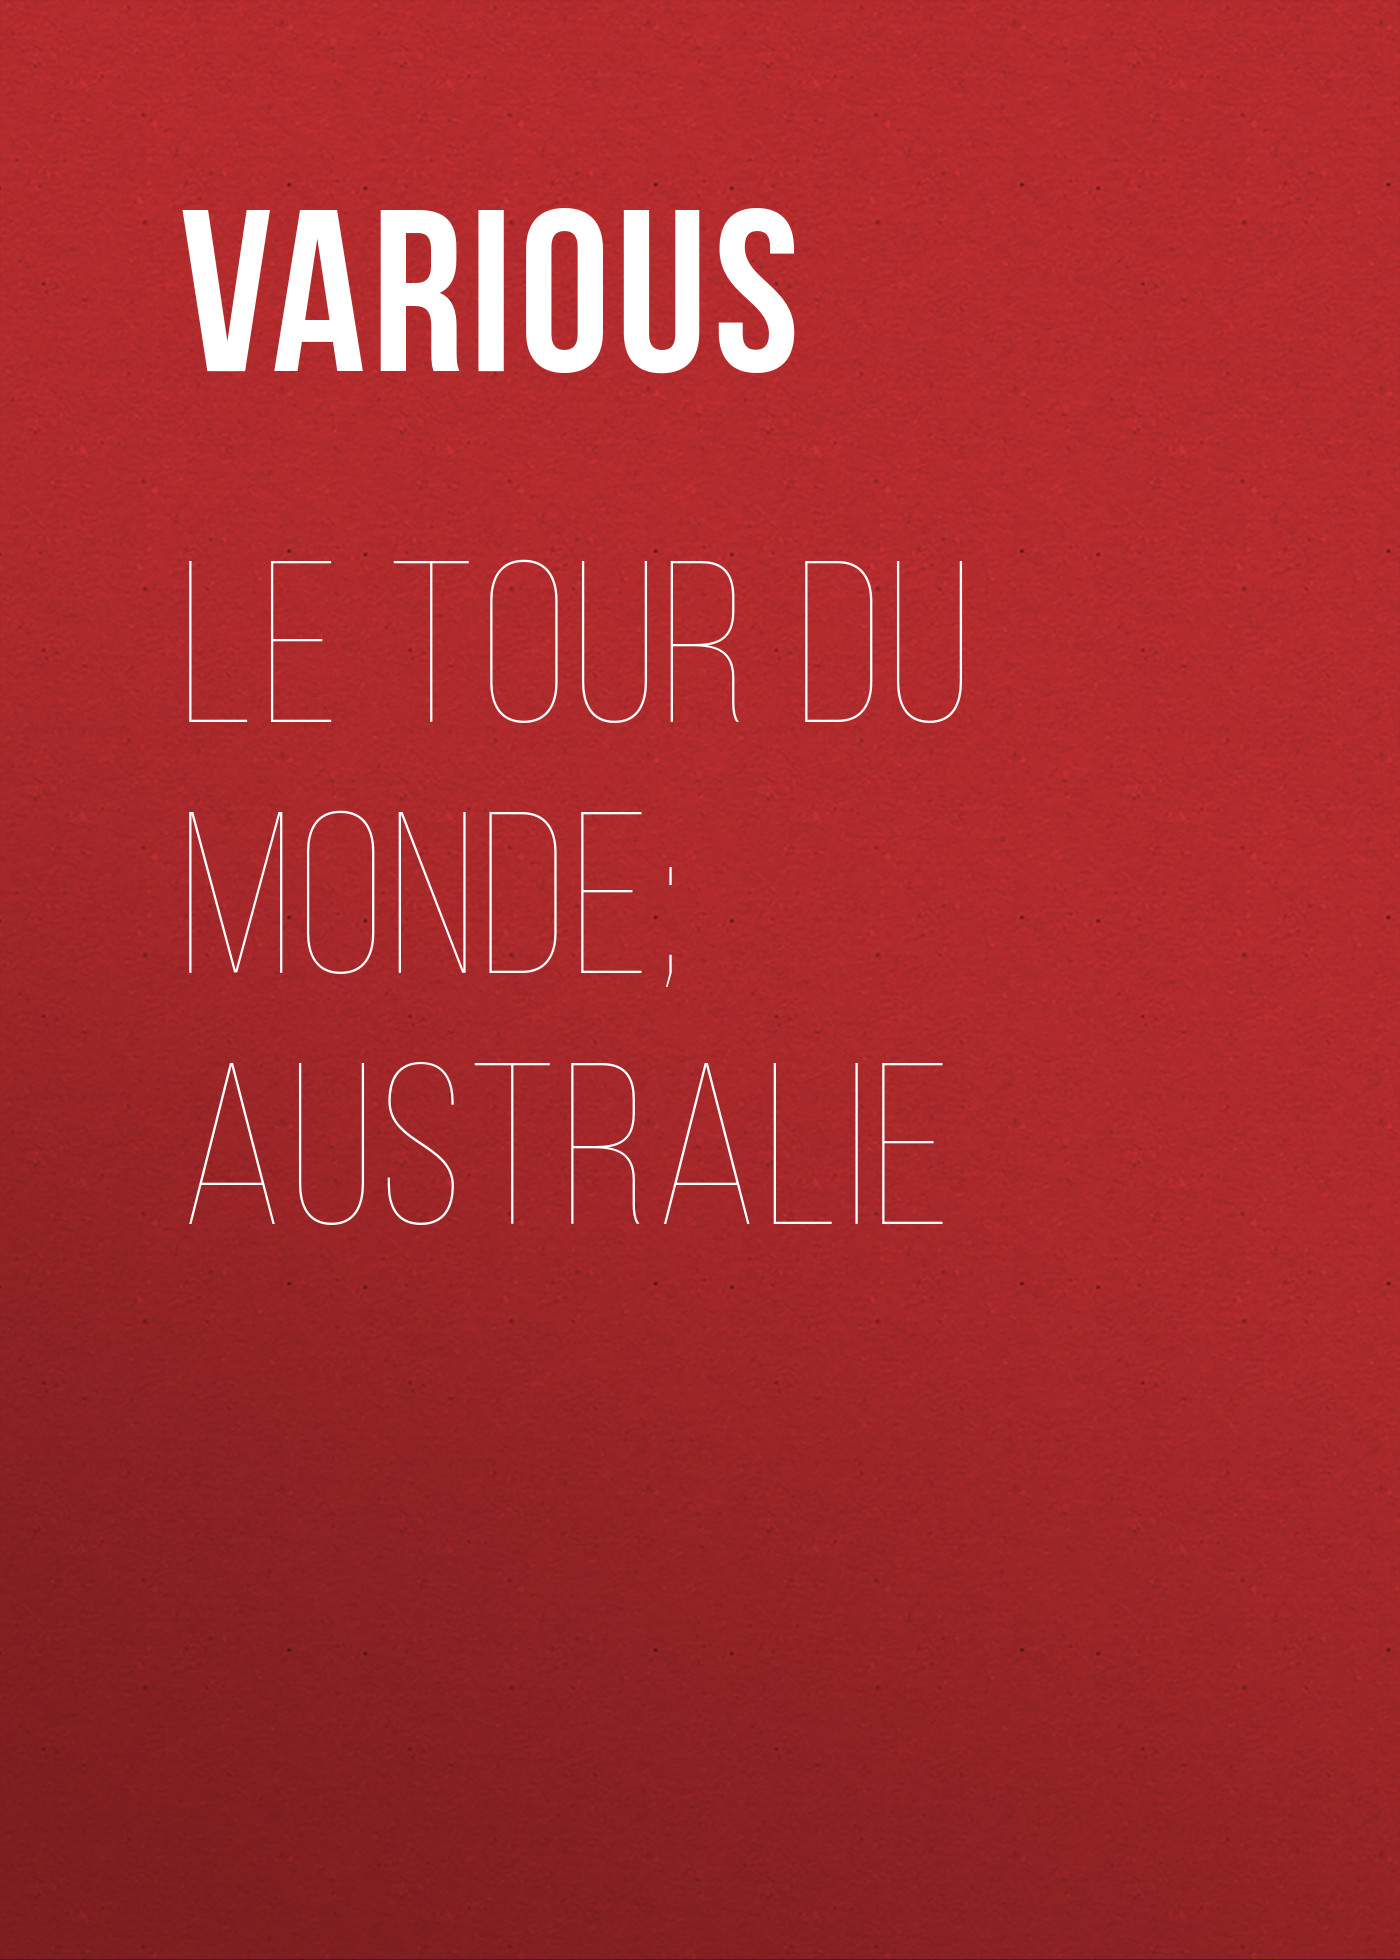 Various Le Tour du Monde; Australie